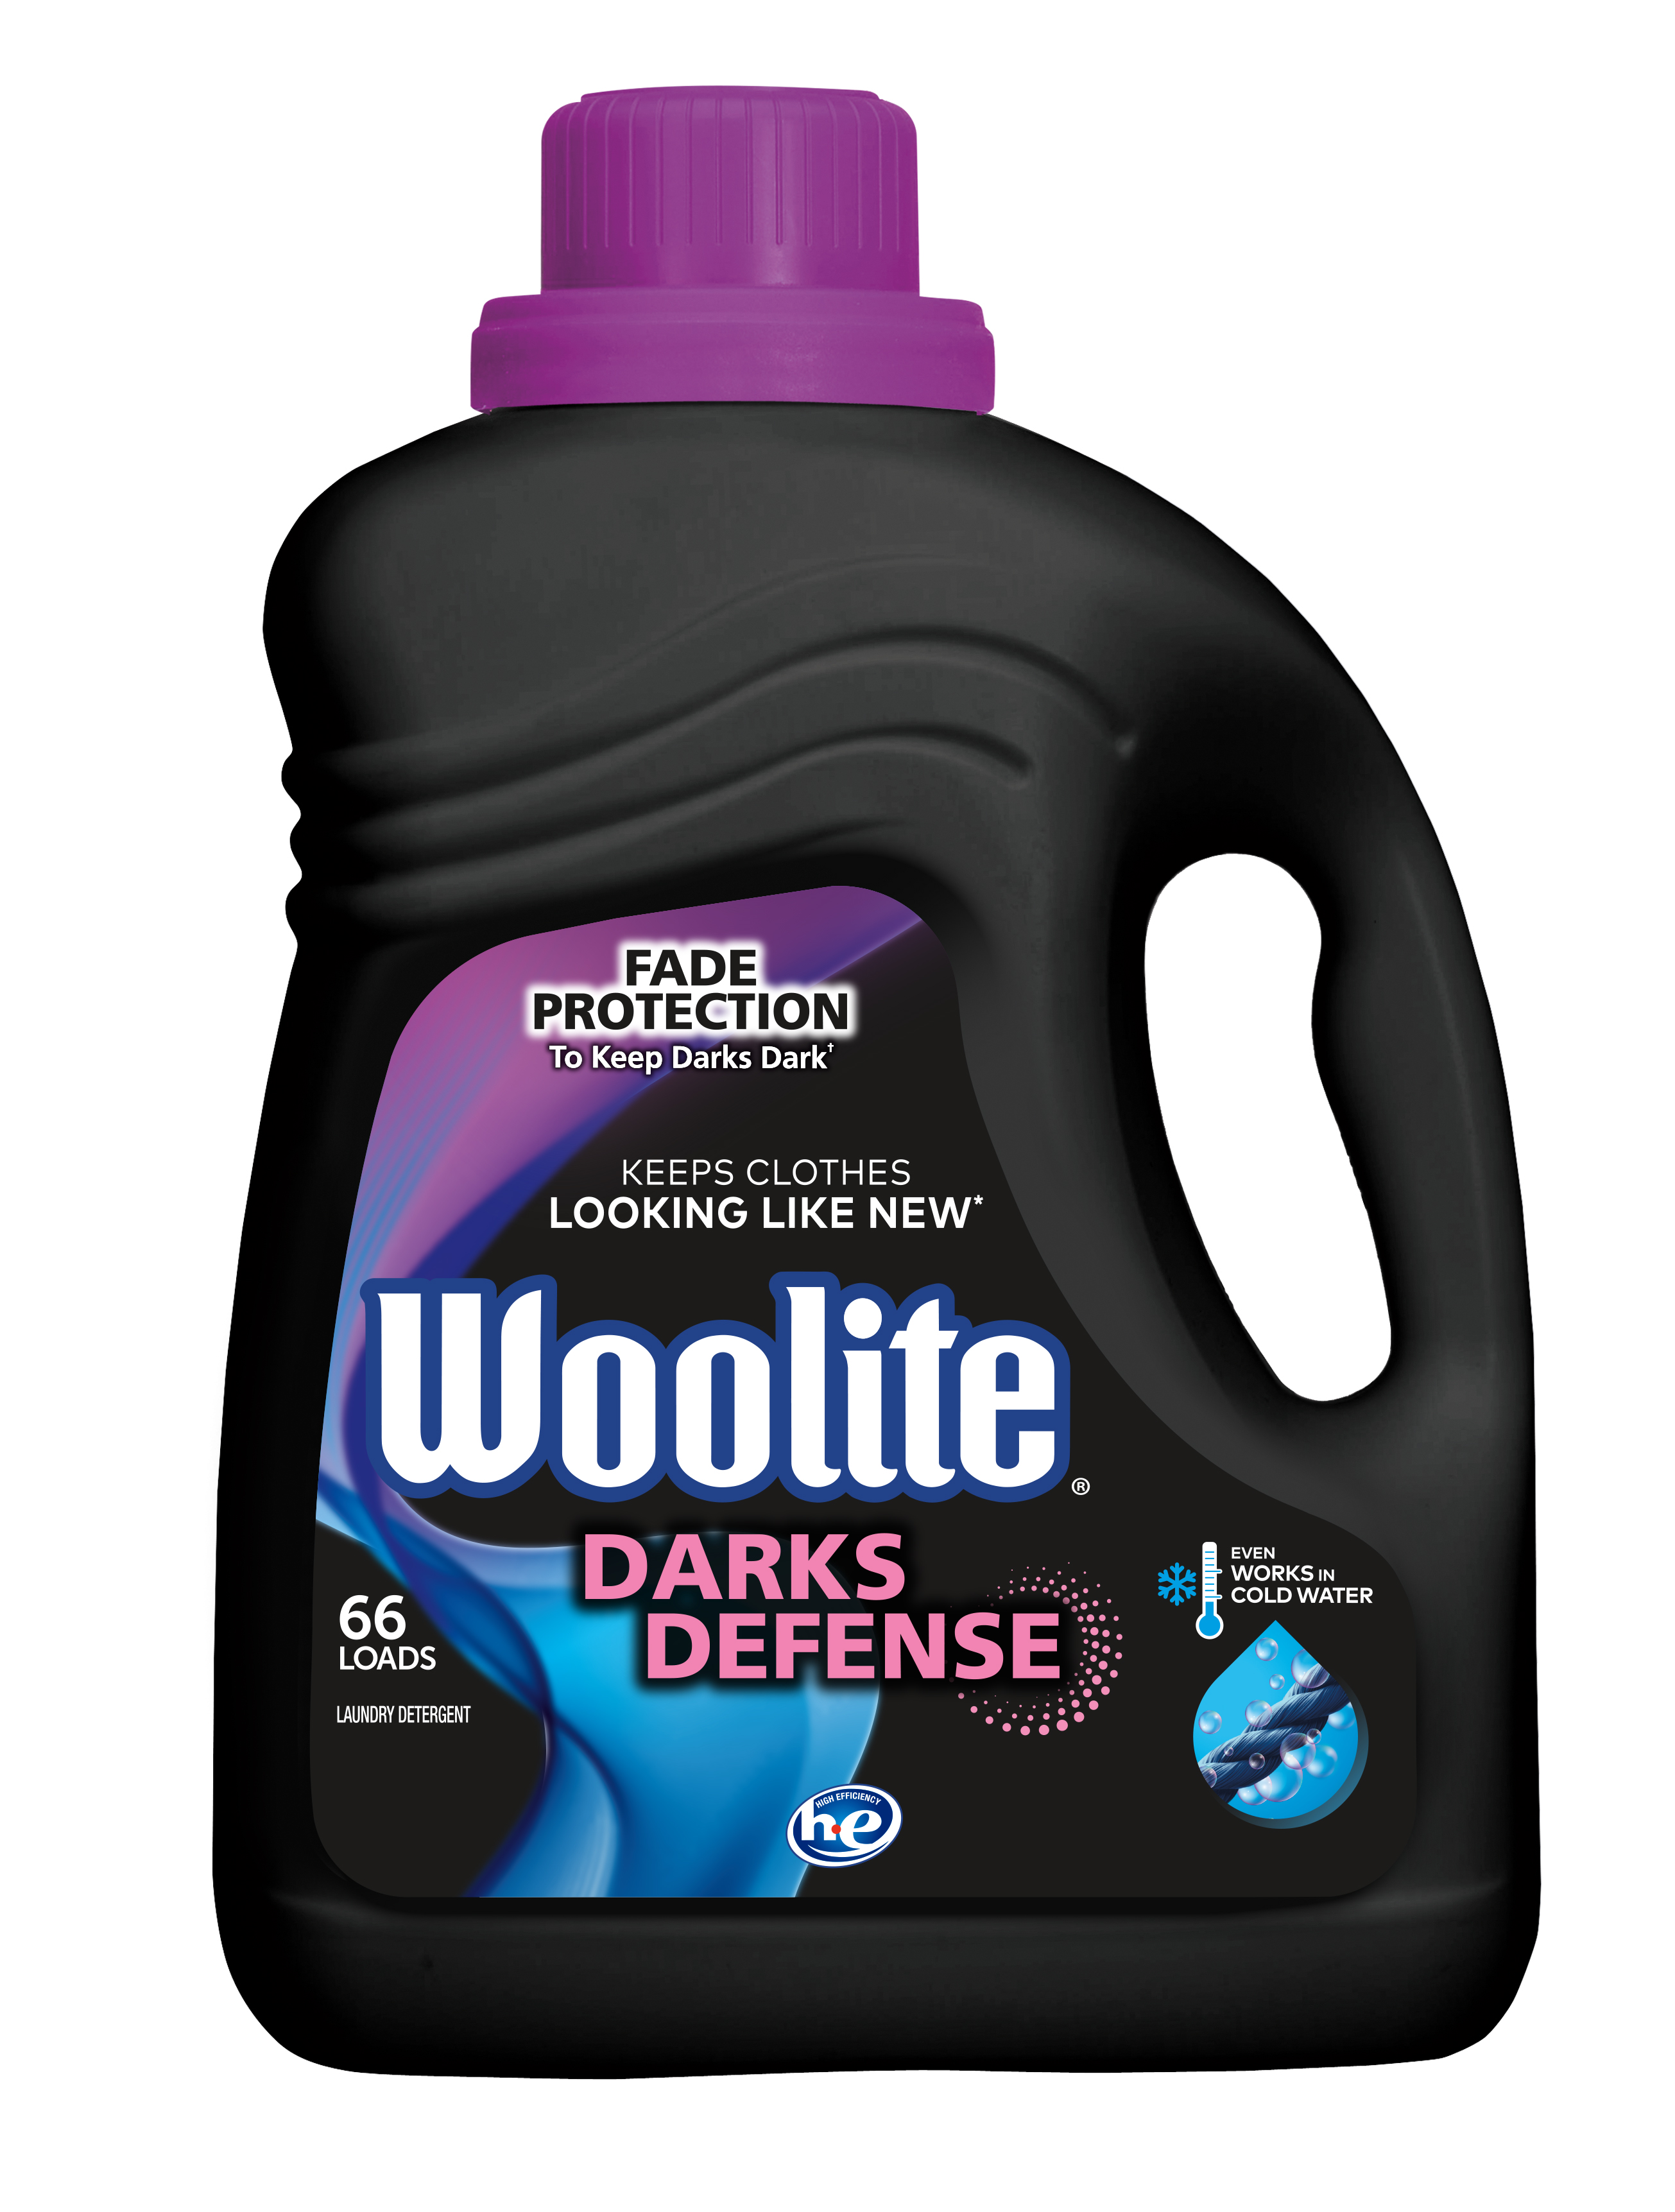 WOOLITE® Darks Defense Laundry Detergent